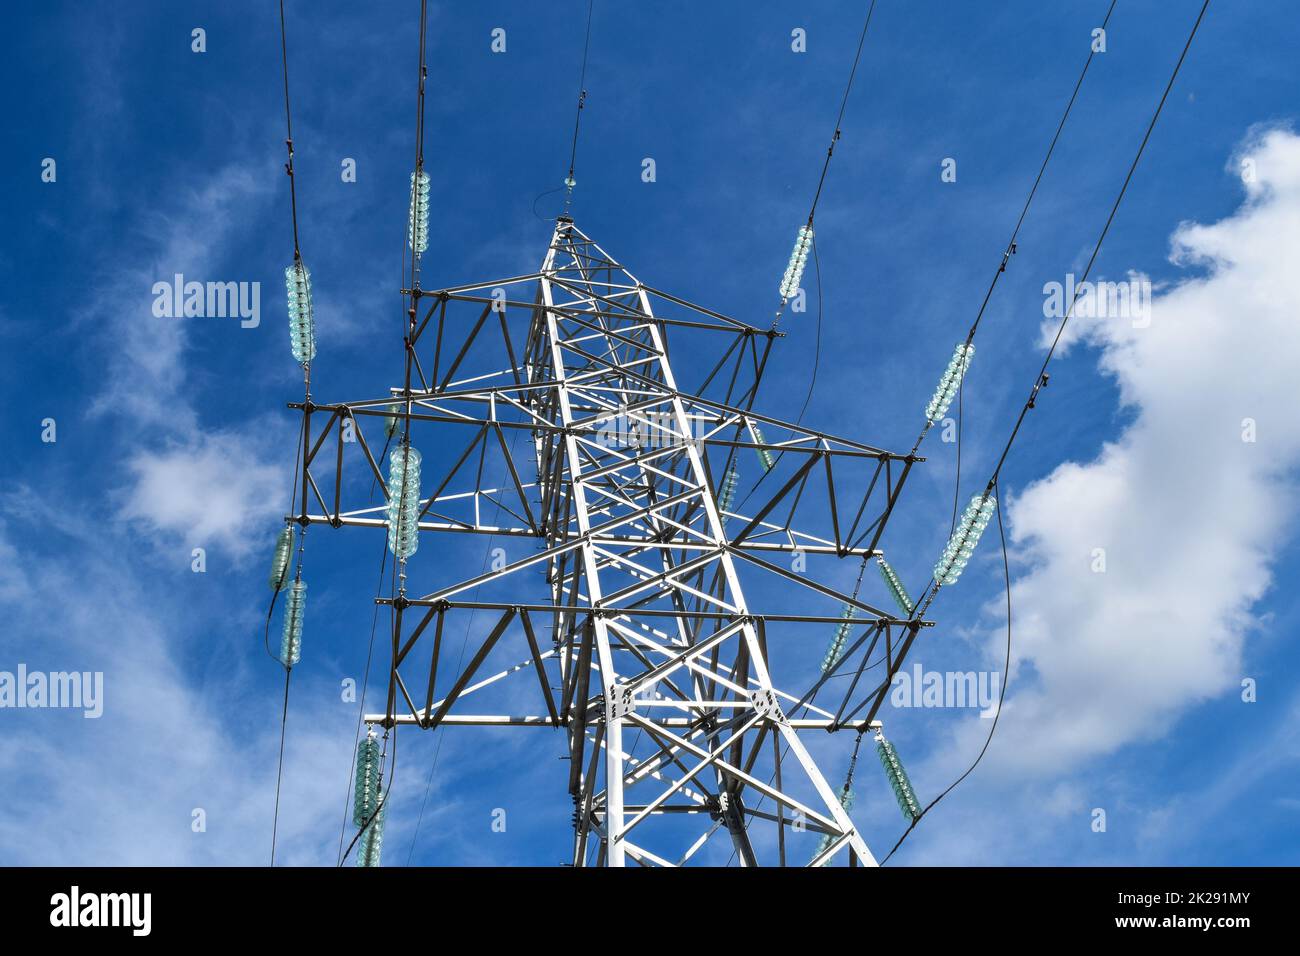 Supporta le linee elettriche ad alta tensione contro il cielo blu con nuvole. Industria elettrica Foto Stock